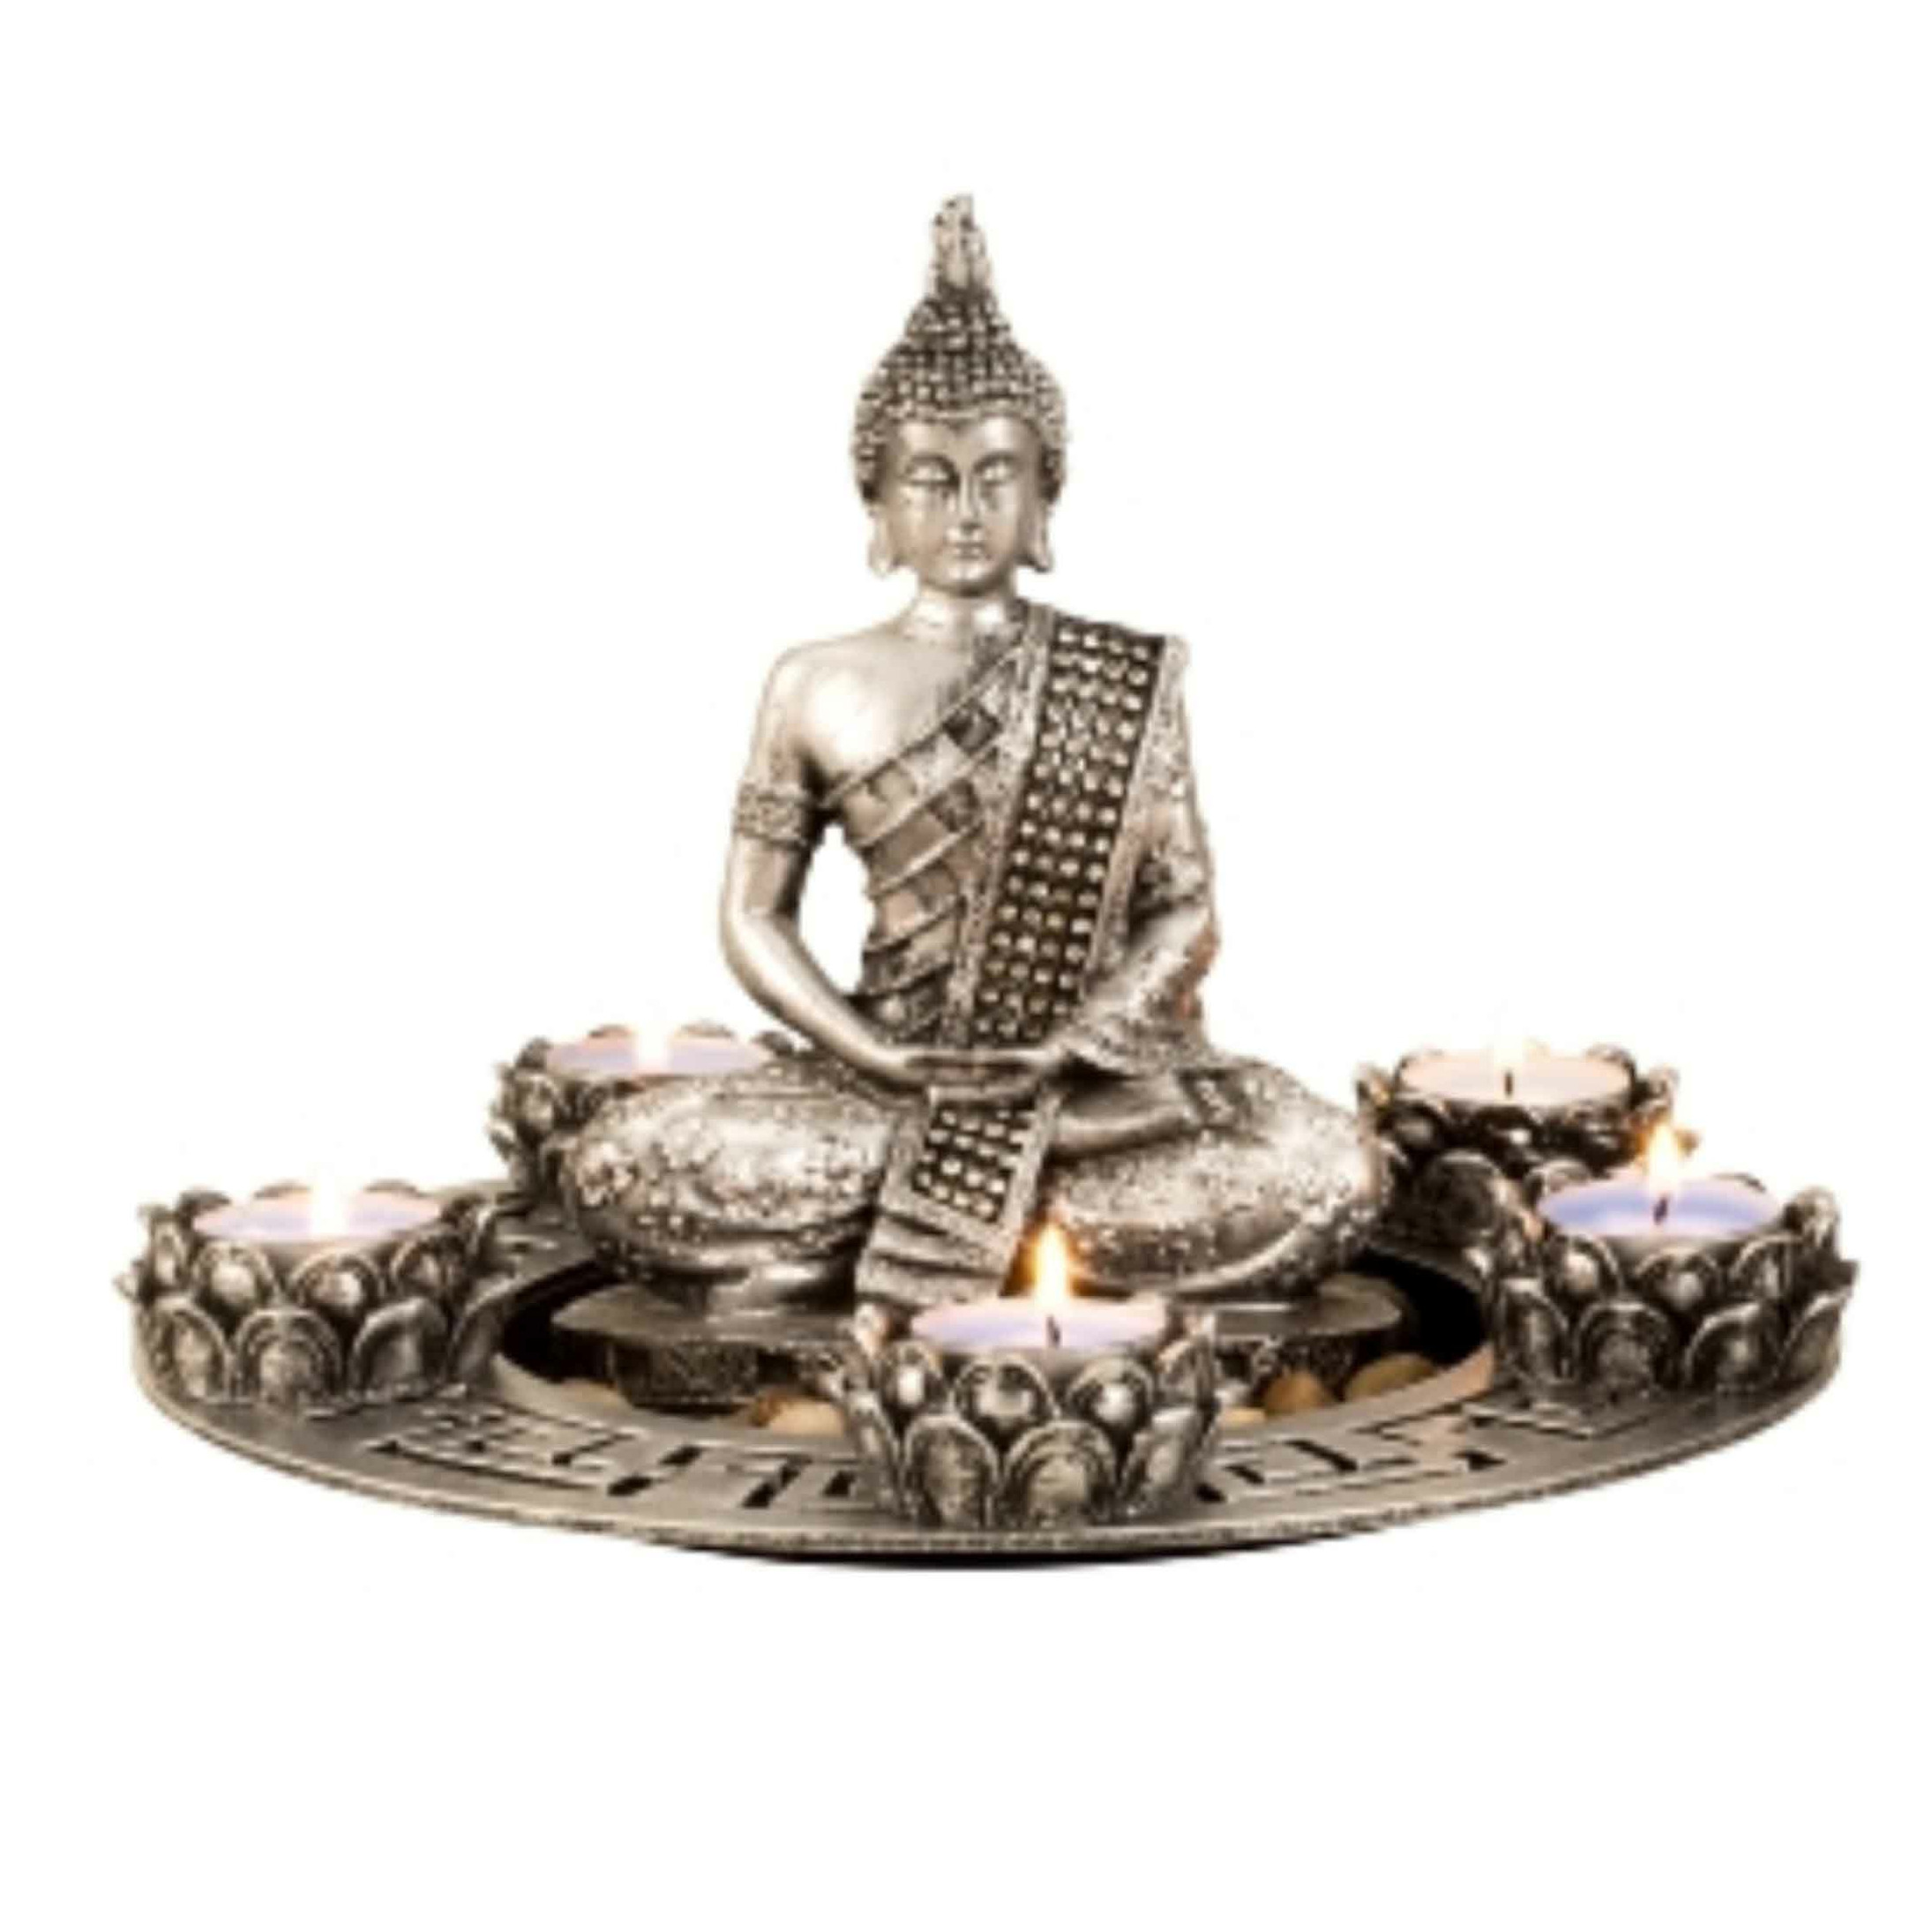 Merkloos Boeddha beeldje met 5 kaarshouders op schaal - kunststeen - zilver - 27 x 20 cm - deco artikel -